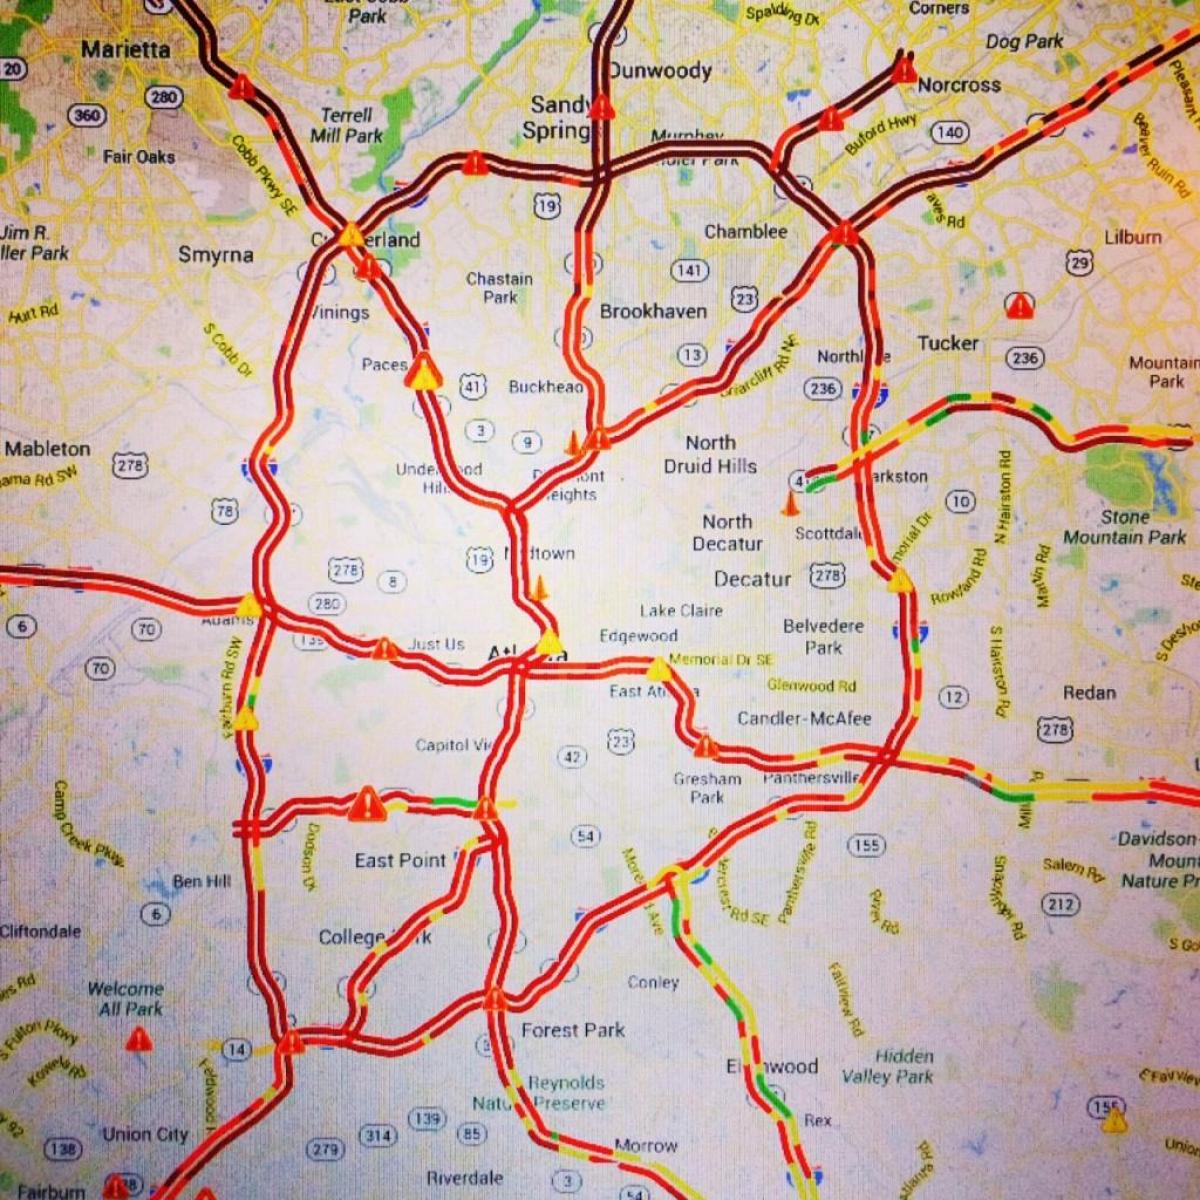 zemljevid Atlanta prometa